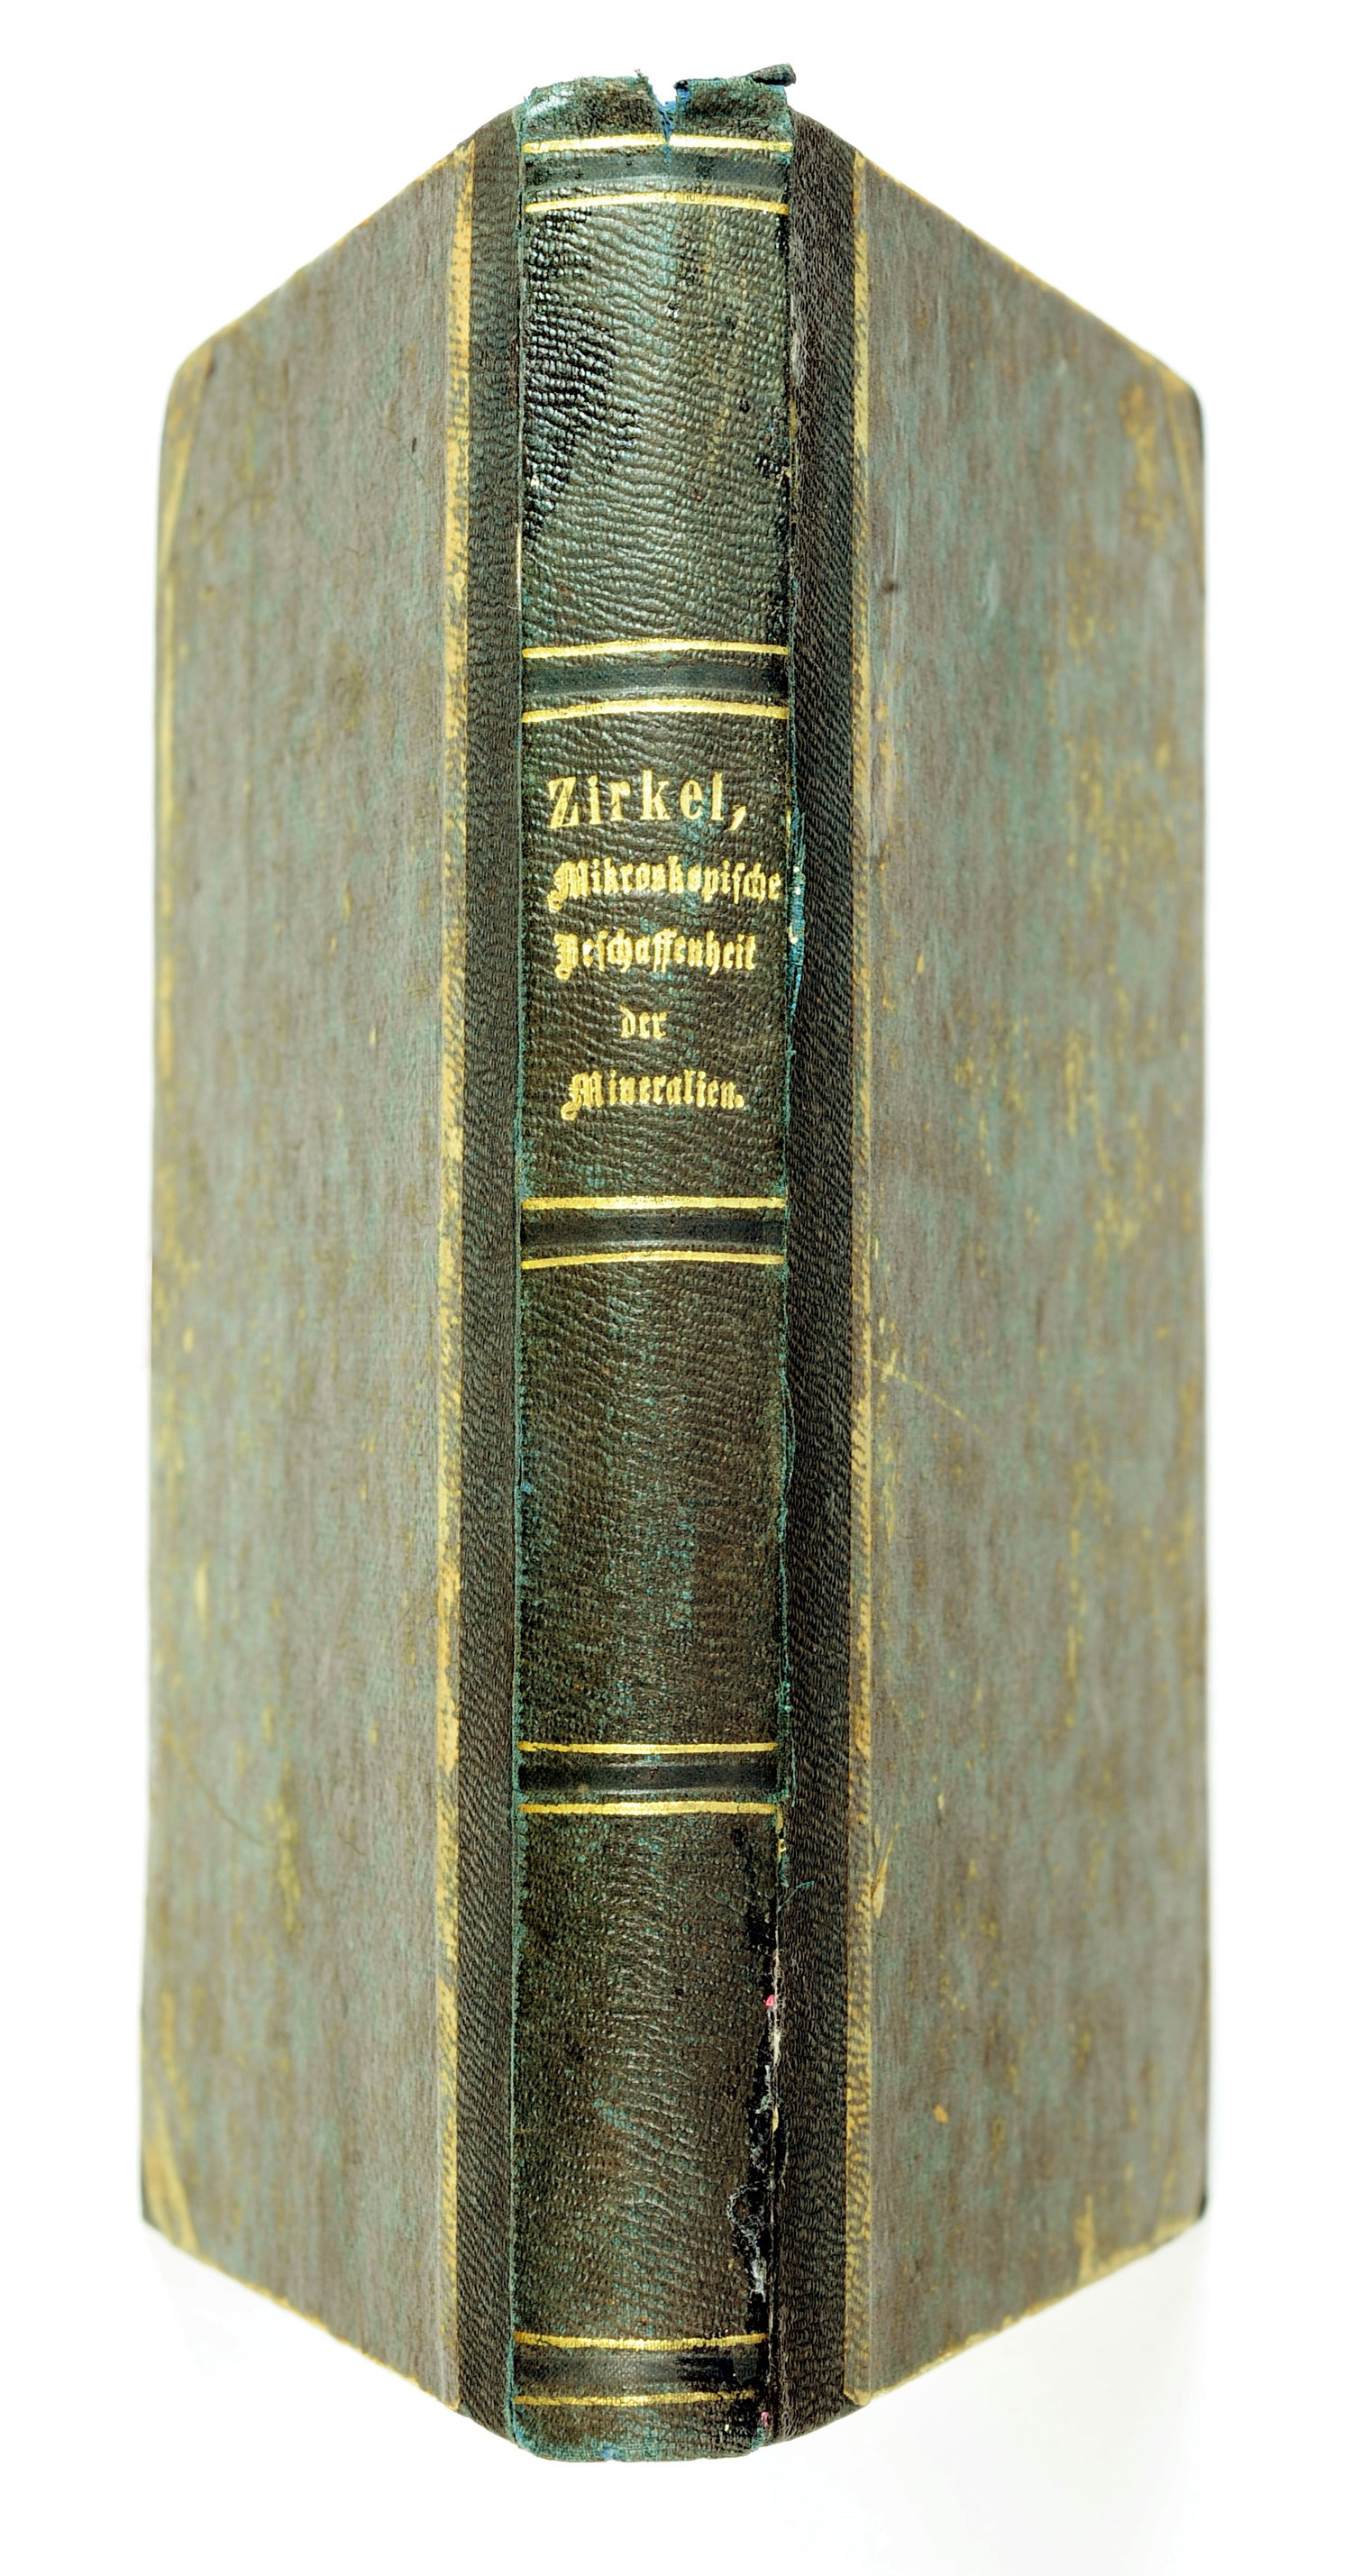 Die Mikroskopische Beschaffenheit Der Mineralien und Gesteine, Zirkel, Ferdinand (1873)